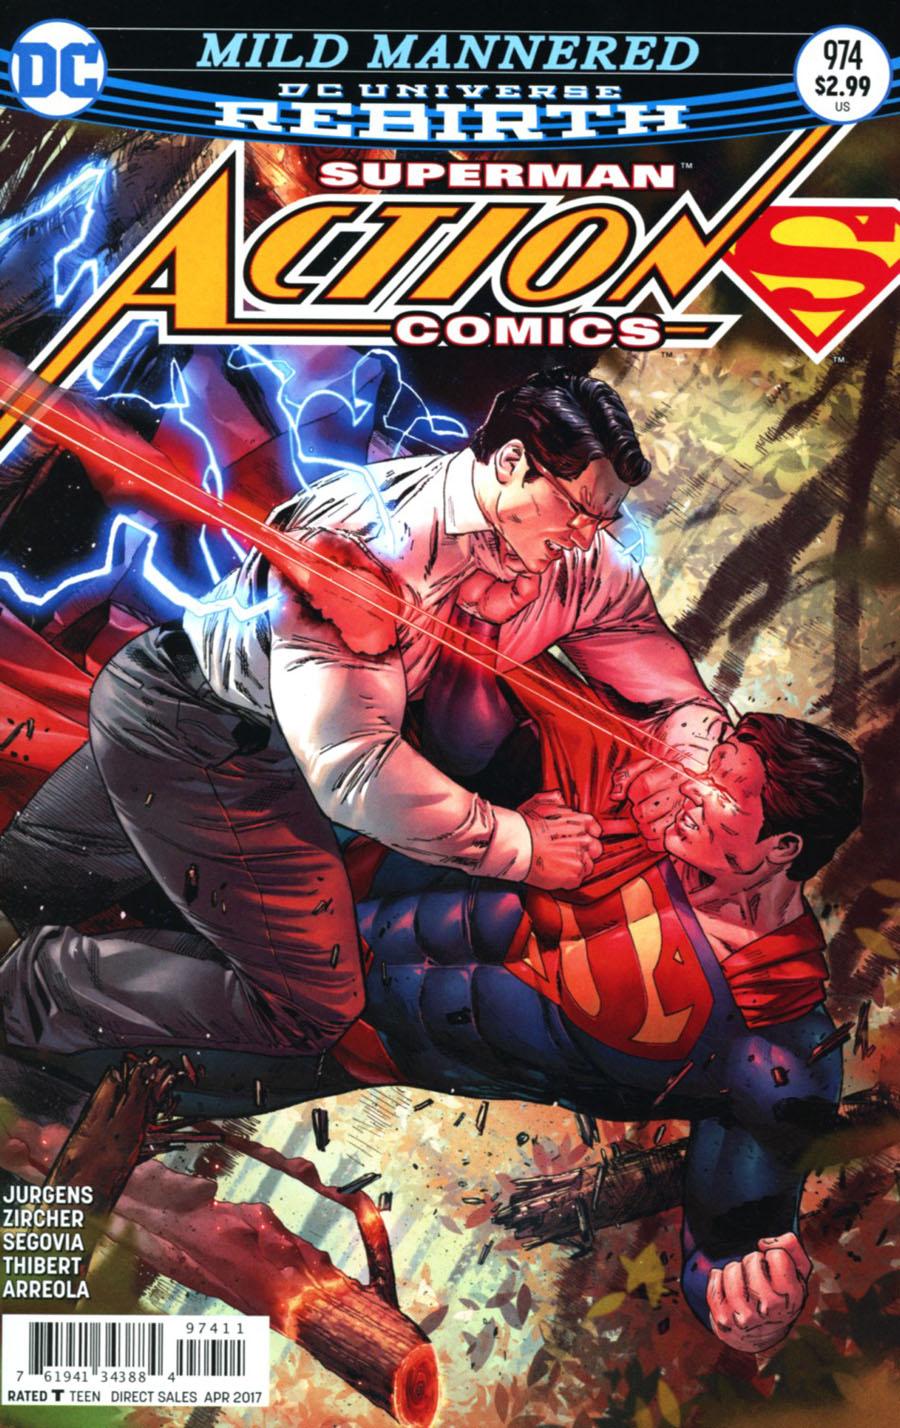 Action Comics Vol. 2 #974